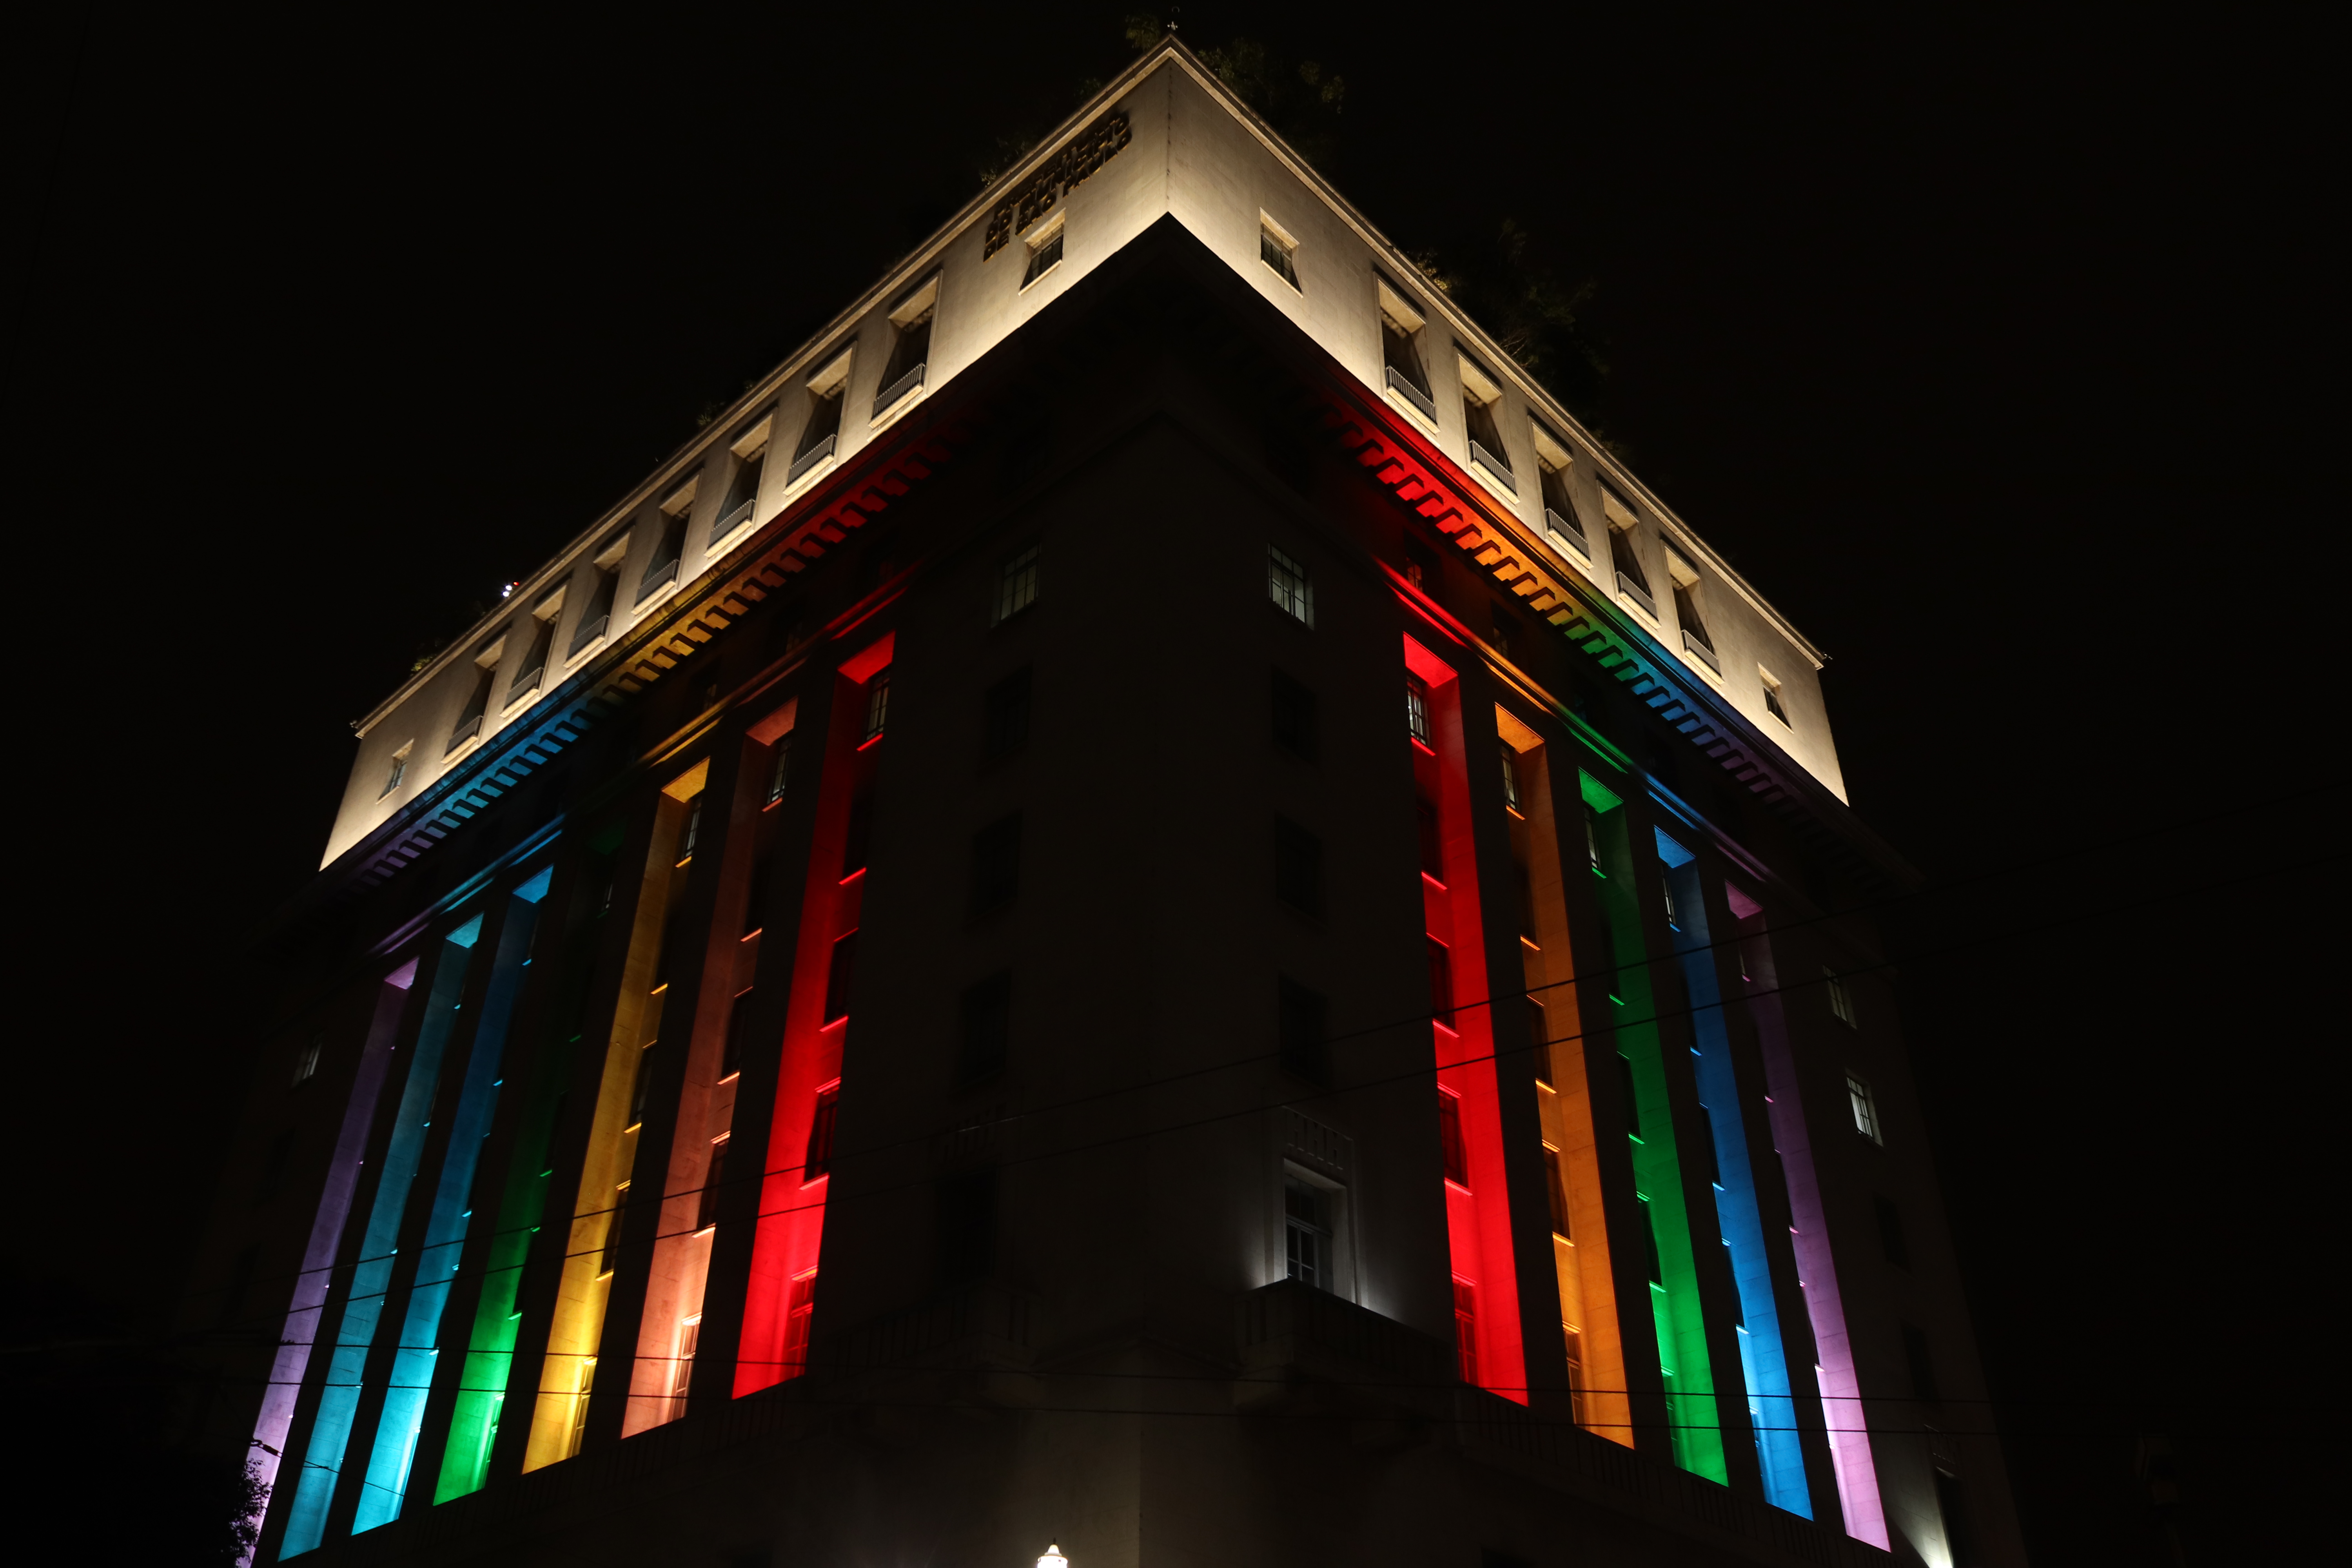 Edifício Matarazzo (sede da Prefeitura de São Paulo) iluminado com as cores da bandeira LGBT (vermelho, laranja, amarelo, verde, azul e roxo)